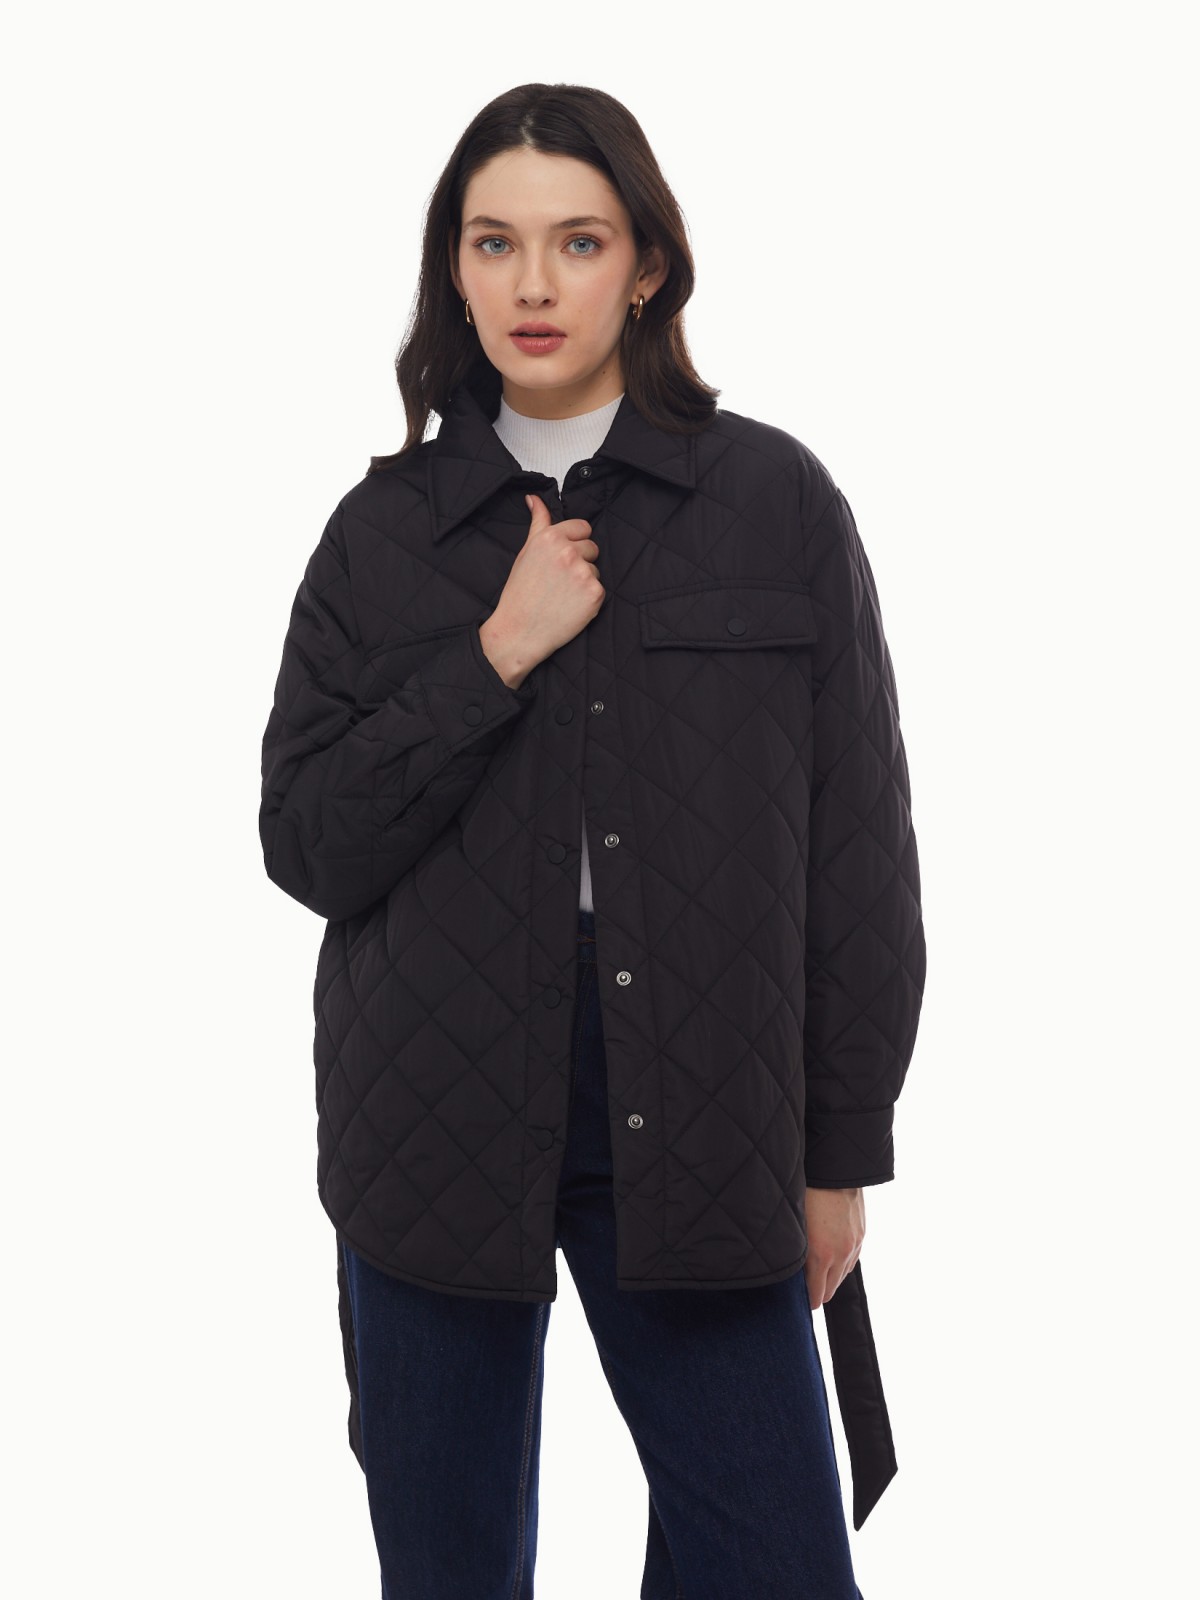 Утеплённая стёганая куртка-рубашка на синтепоне с поясом zolla 024135102134, цвет черный, размер XS